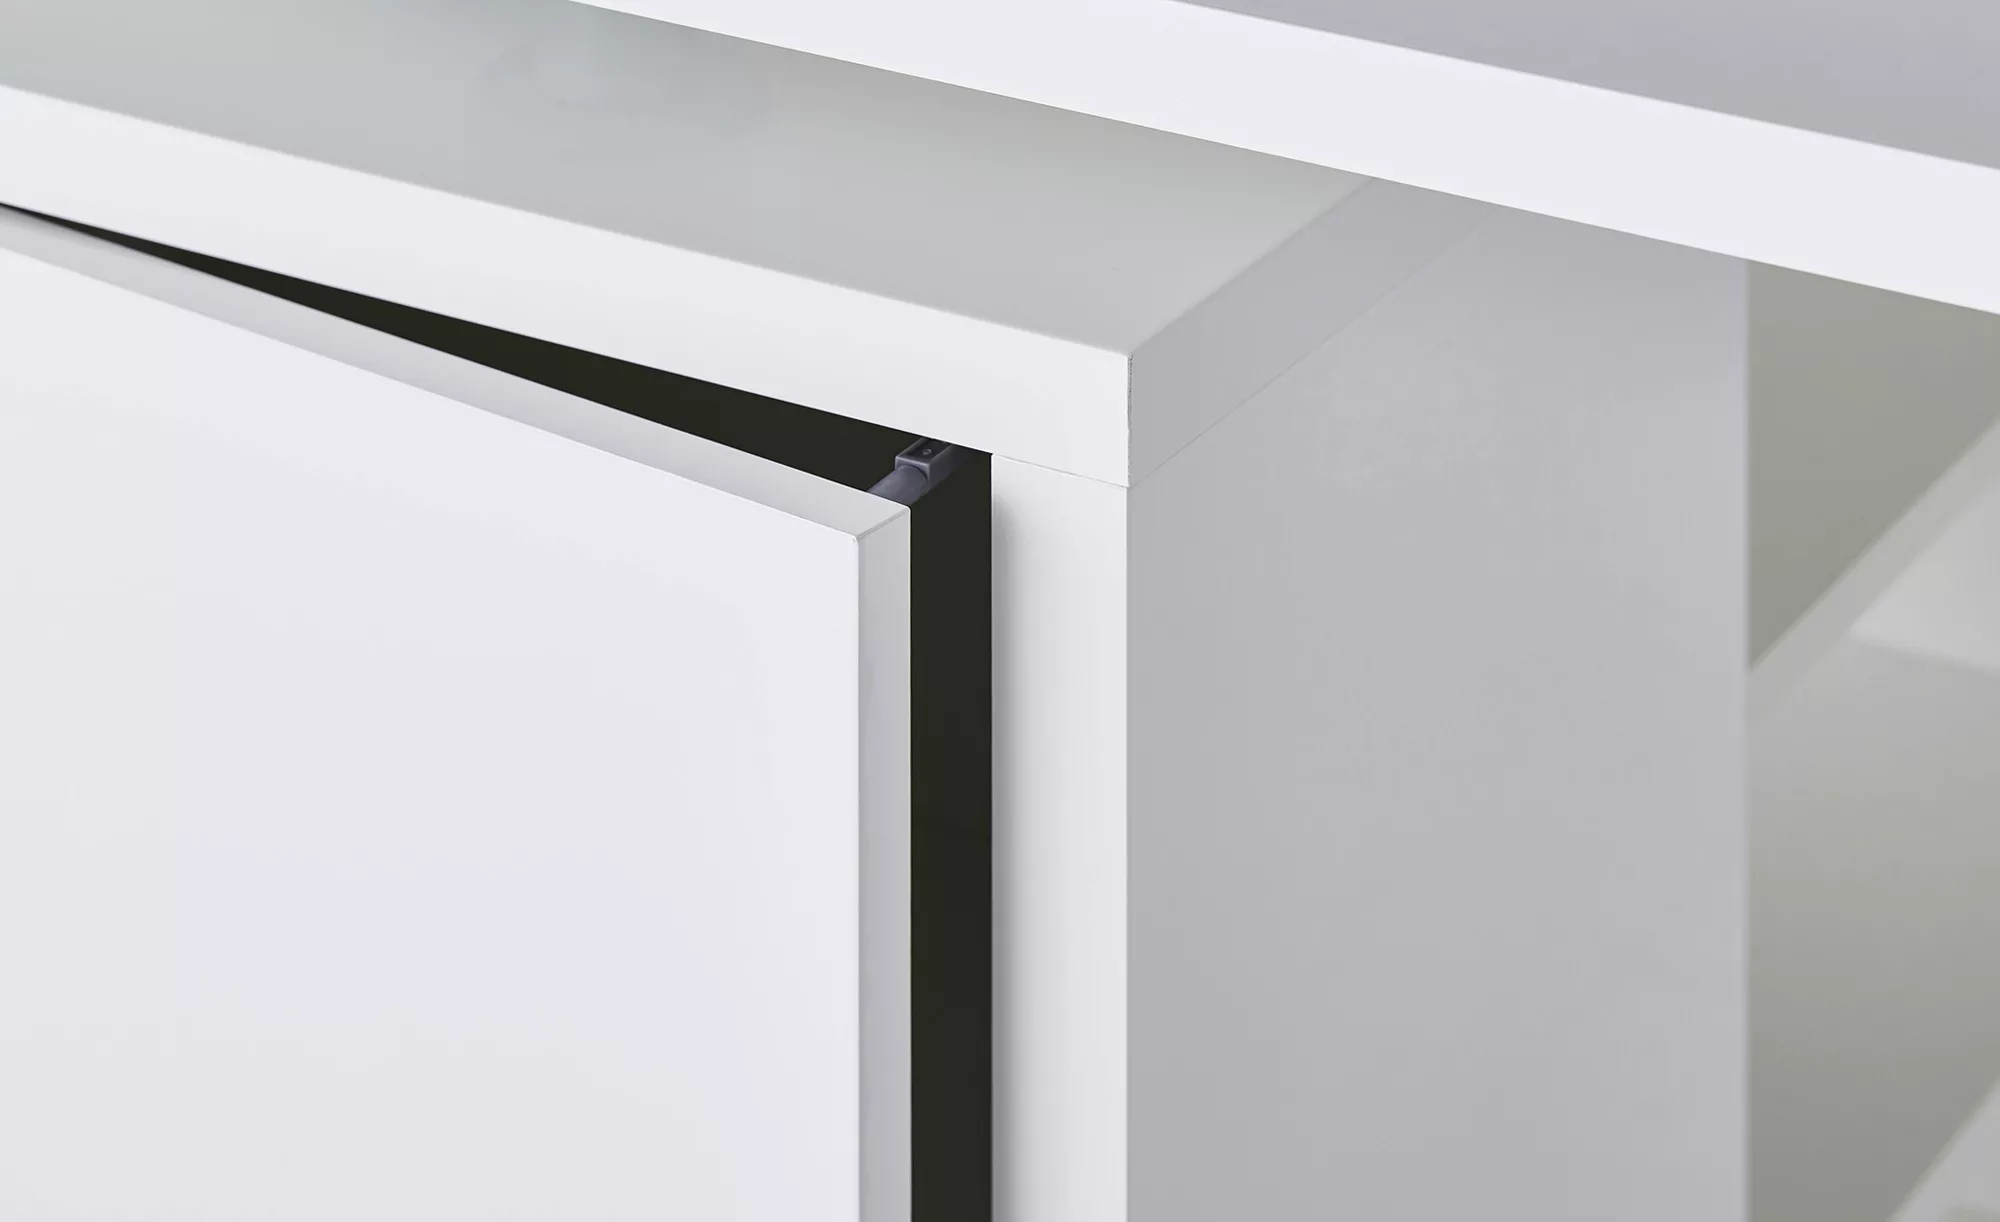 Schreibtisch  Chiemsee - weiß - 140 cm - 74 cm - 69 cm - Sconto günstig online kaufen